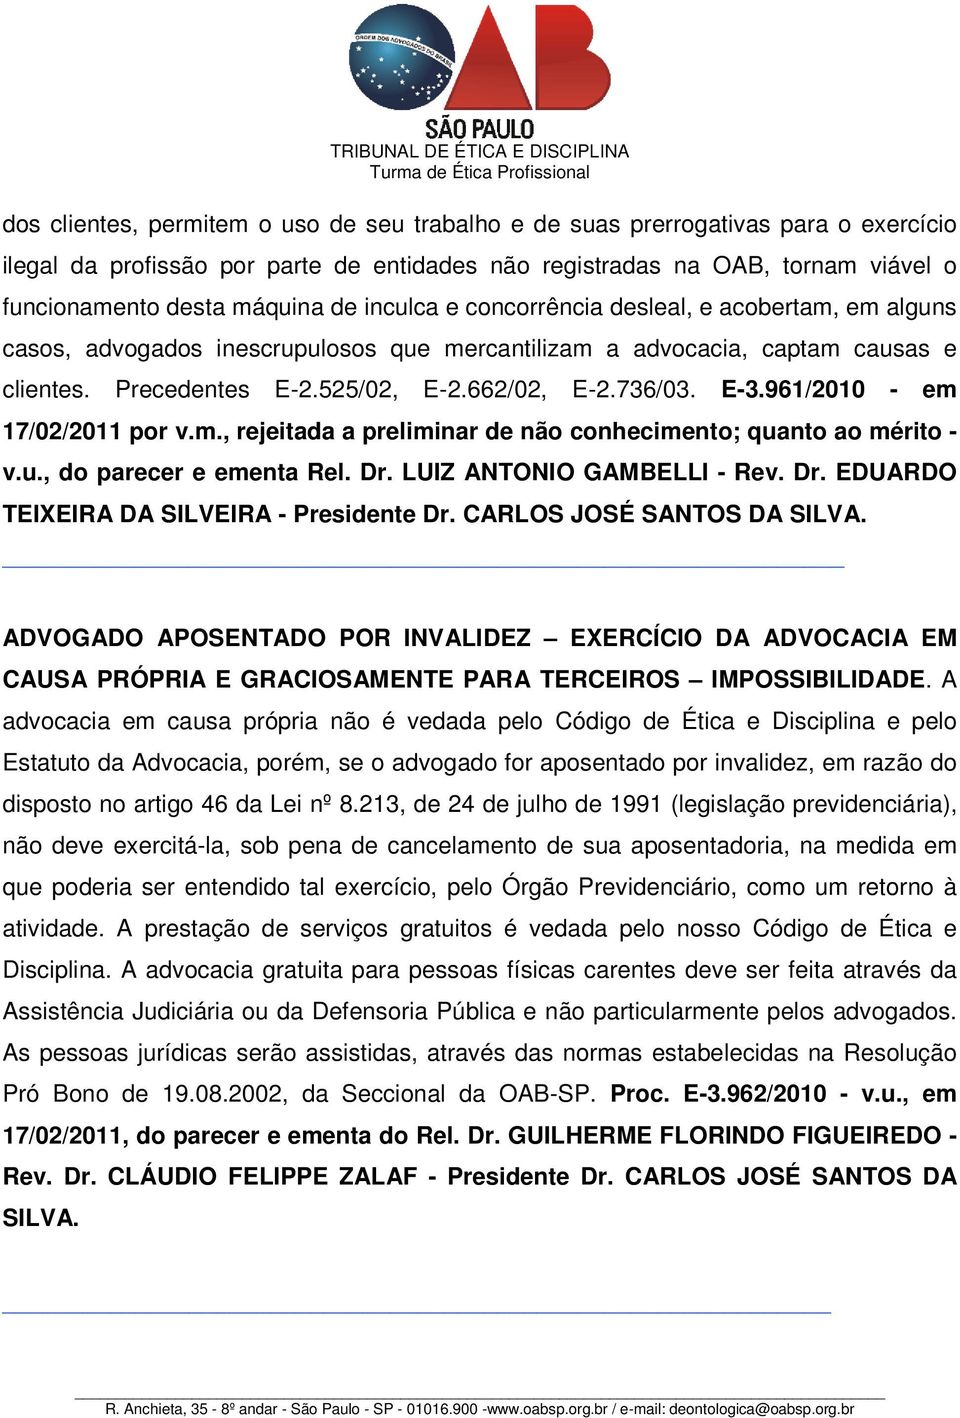 961/2010 - em 17/02/2011 por v.m., rejeitada a preliminar de não conhecimento; quanto ao mérito - v.u., do parecer e ementa Rel. Dr. LUIZ ANTONIO GAMBELLI - Rev. Dr. EDUARDO TEIXEIRA DA SILVEIRA - Presidente Dr.